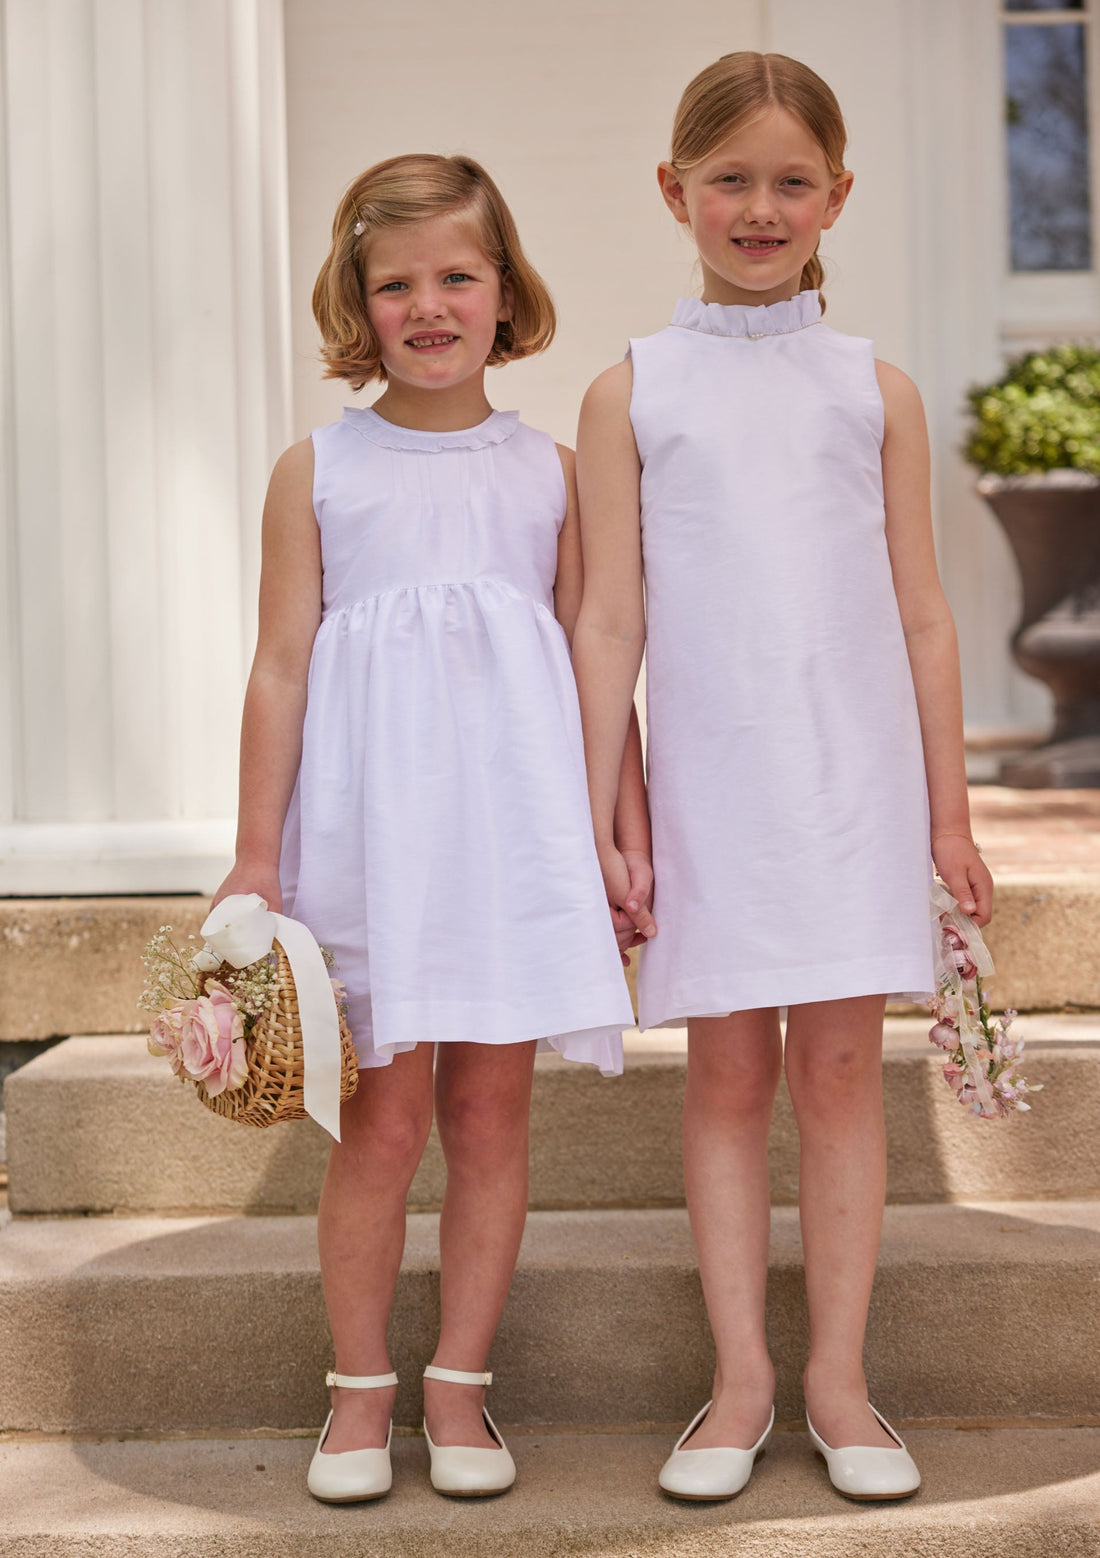 formal dresses for girls